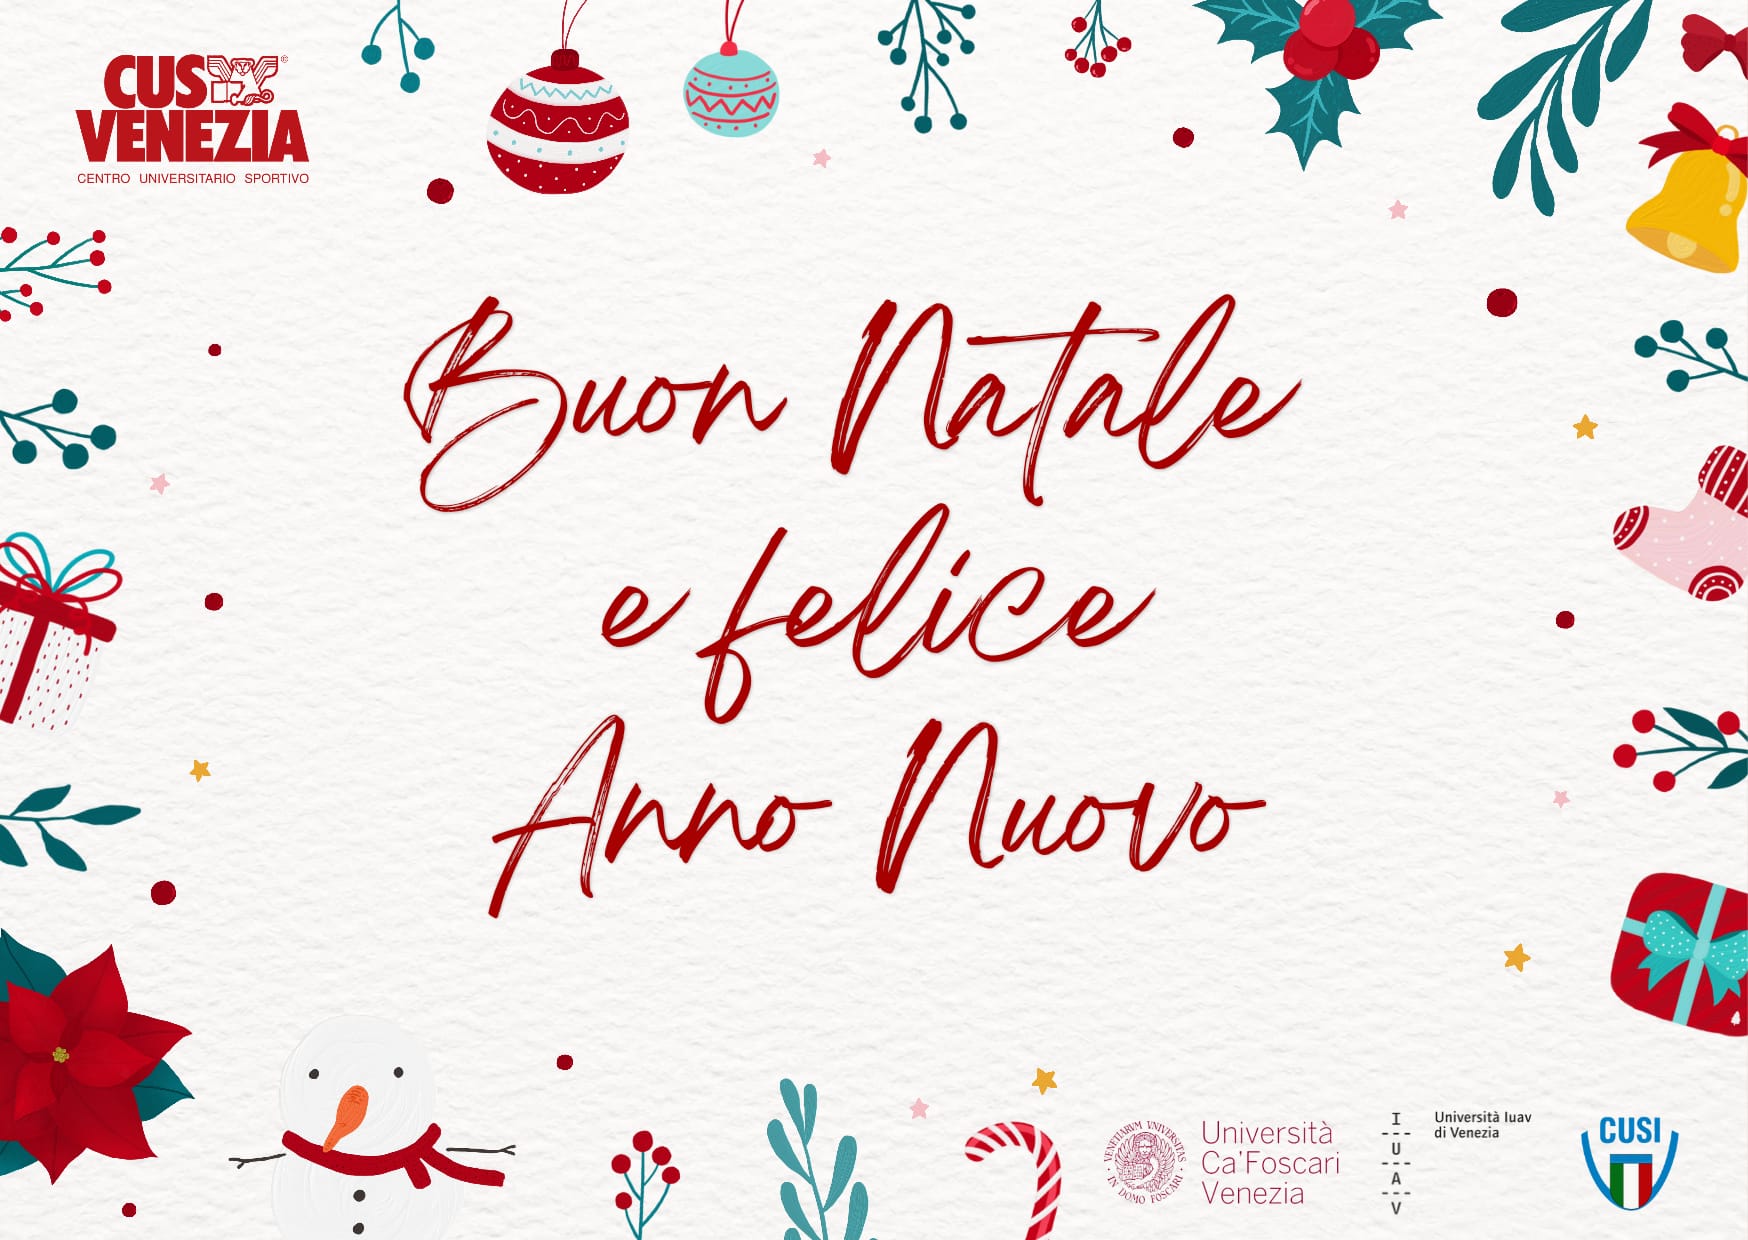 Il CUS Venezia porge i migliori auguri di Buon Natale e Felice Anno Nuovo! 🎅🏻🎄🥂🍾